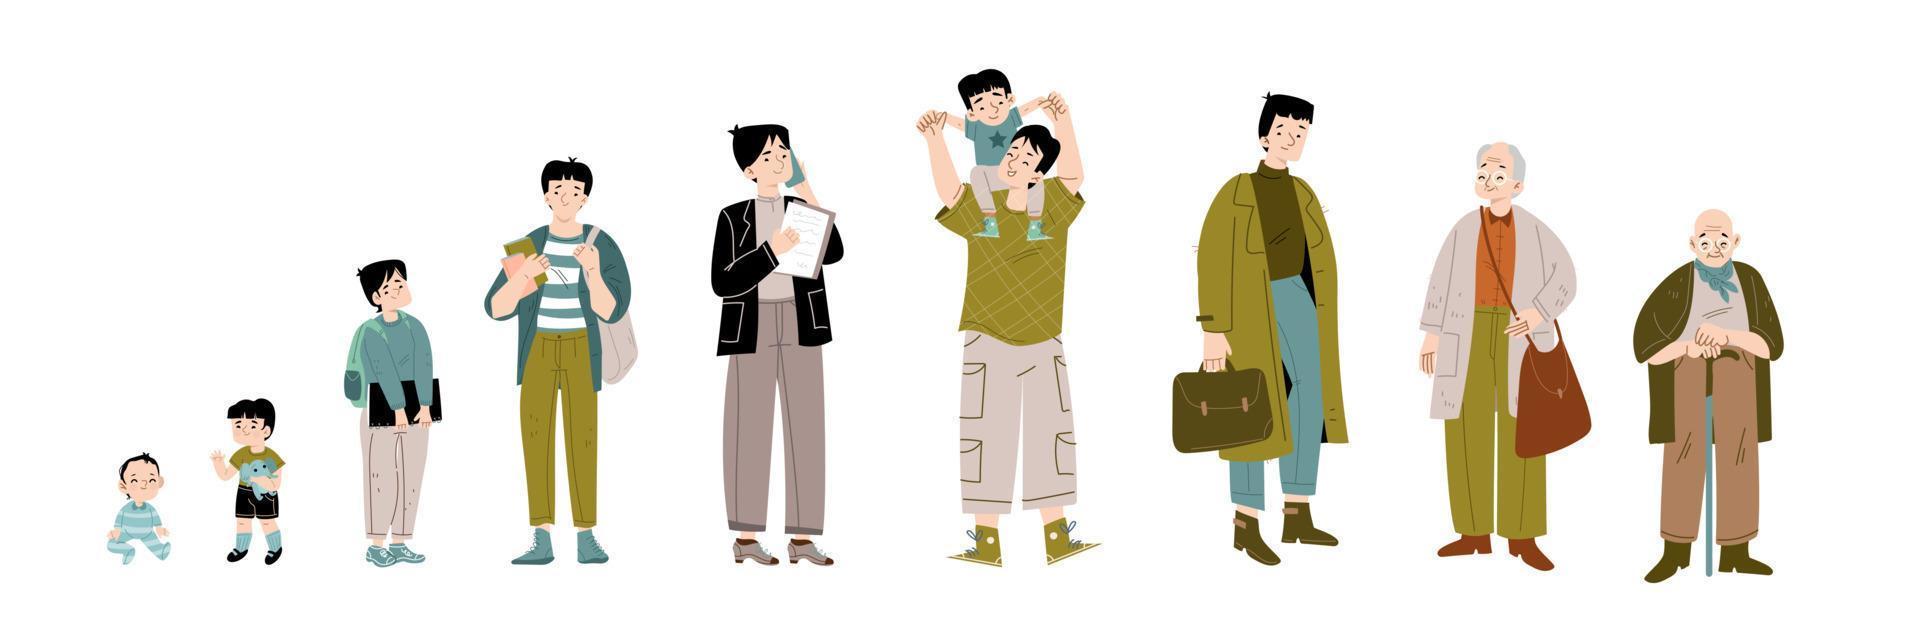 Lebenszyklus des asiatischen Mannes vom Säuglingsalter bis zum Alter vektor